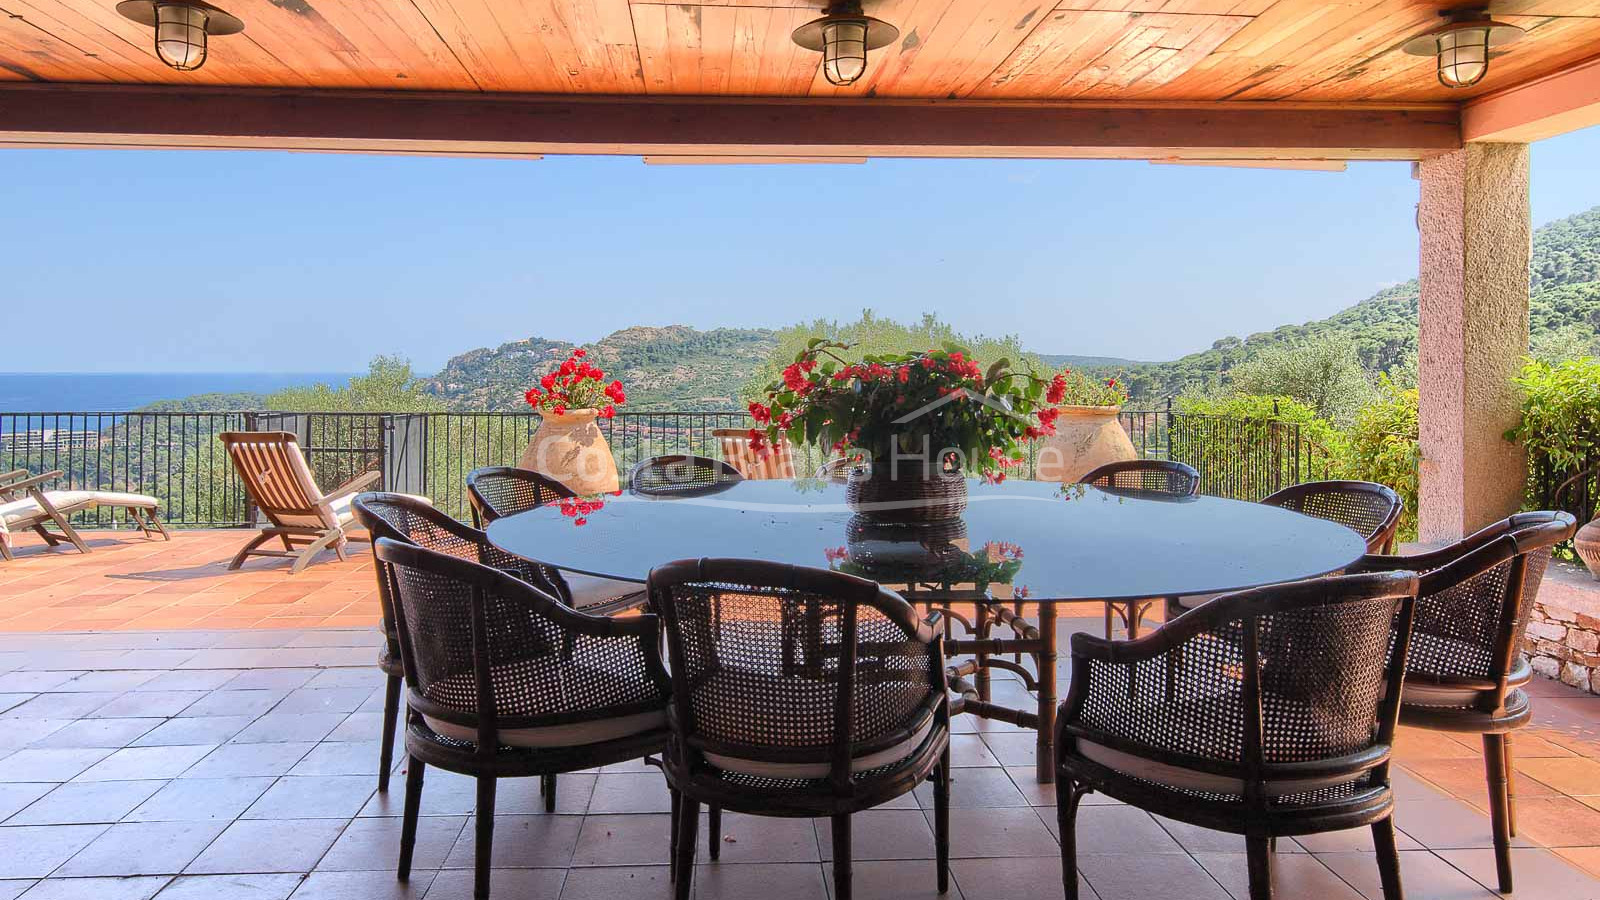 Impressionnante villa de luxe avec une vue fantastique sur la mer à vendre à Aiguablava (Begur)